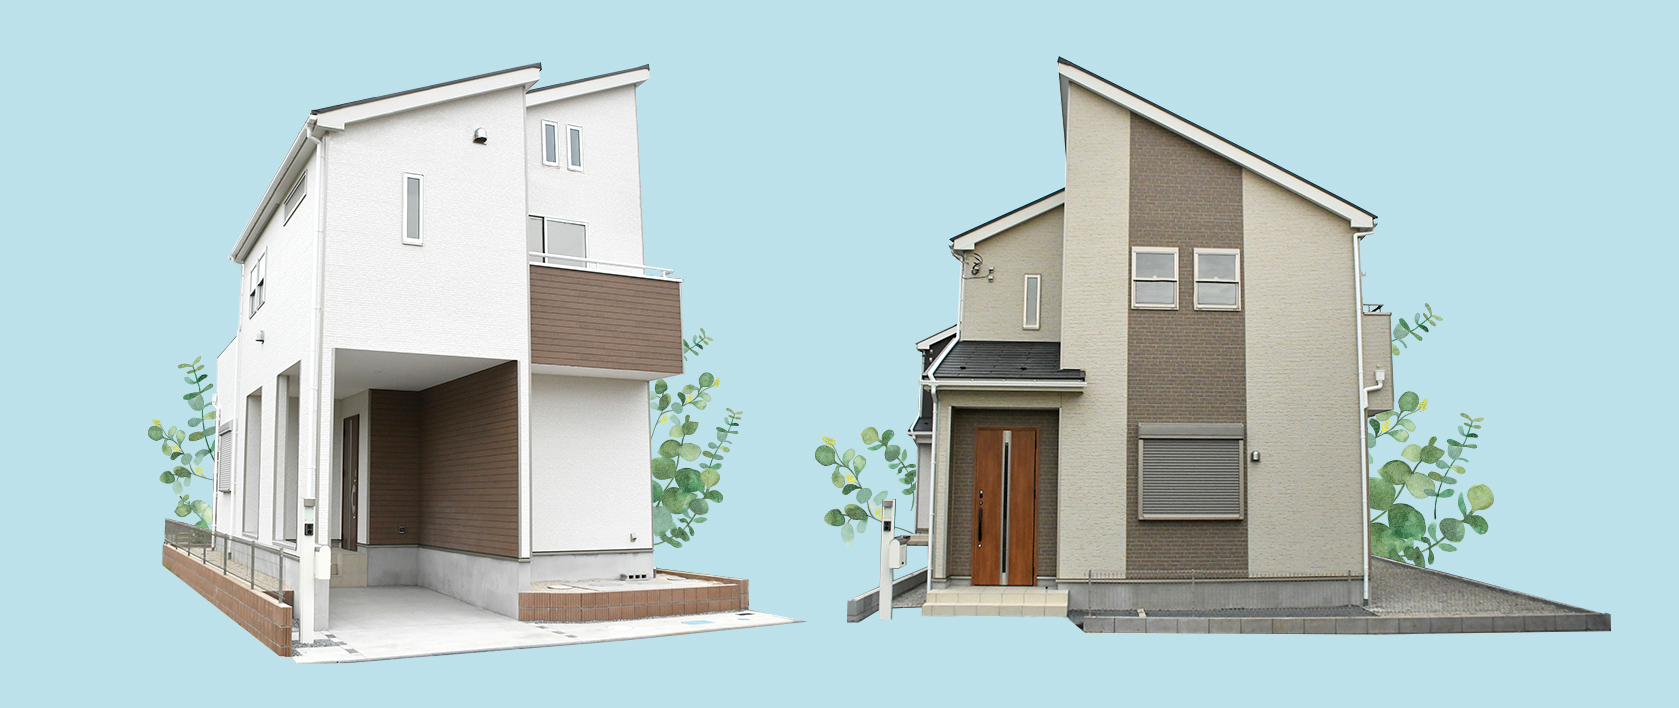 戸建住宅の例